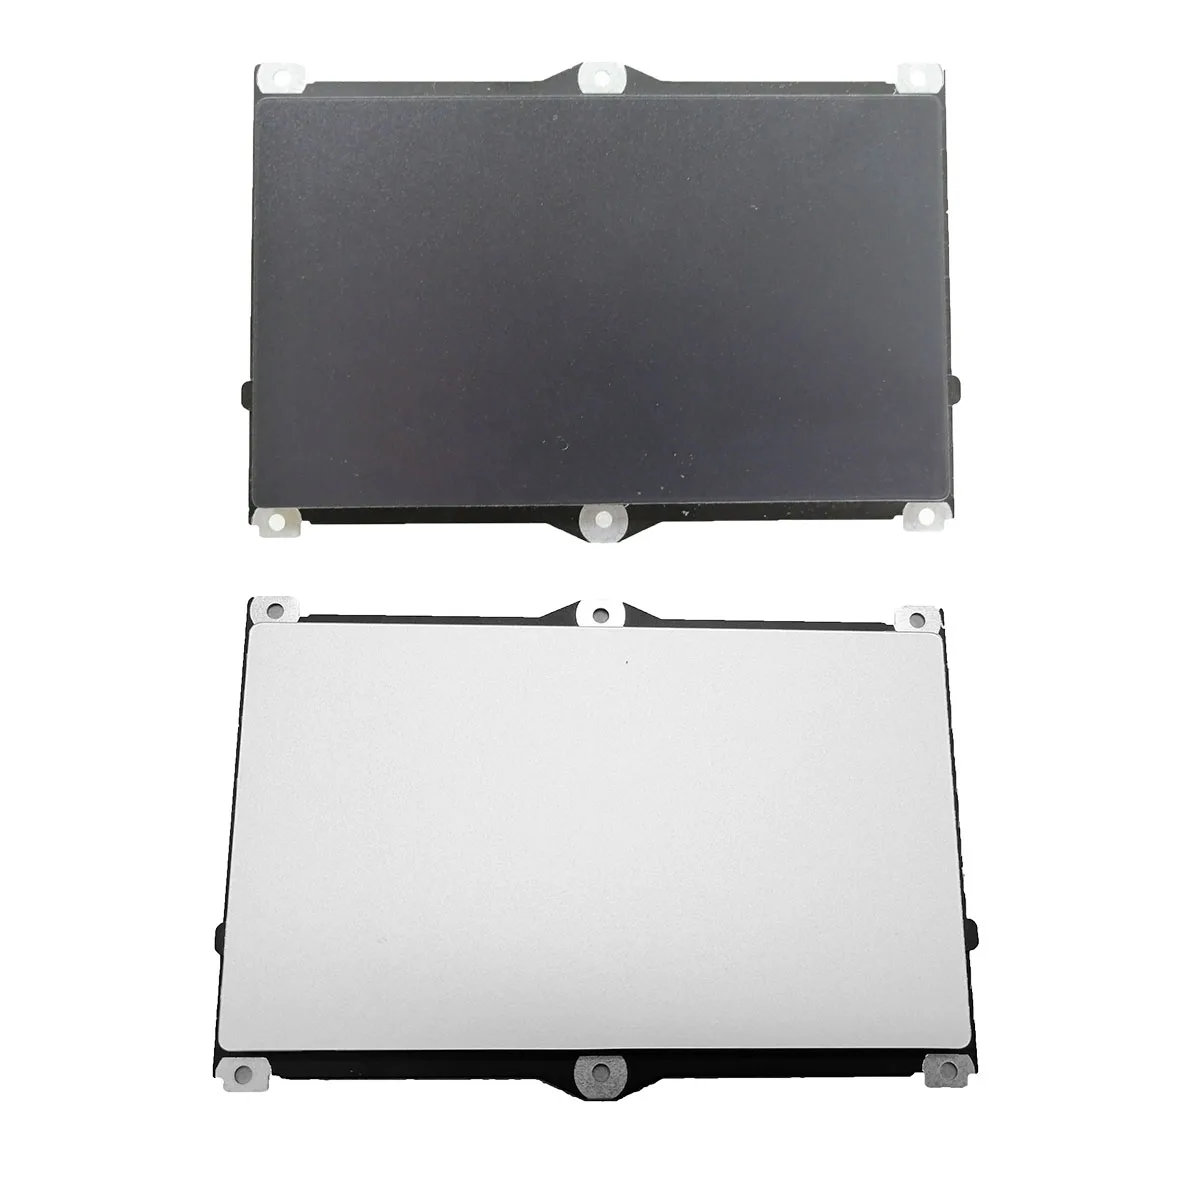 

Новая и оригинальная сенсорная панель для ноутбука HP ProBook 640 645 G4 G5 430 440 G6 G7, коврик для мыши, цвет черный/серебристый